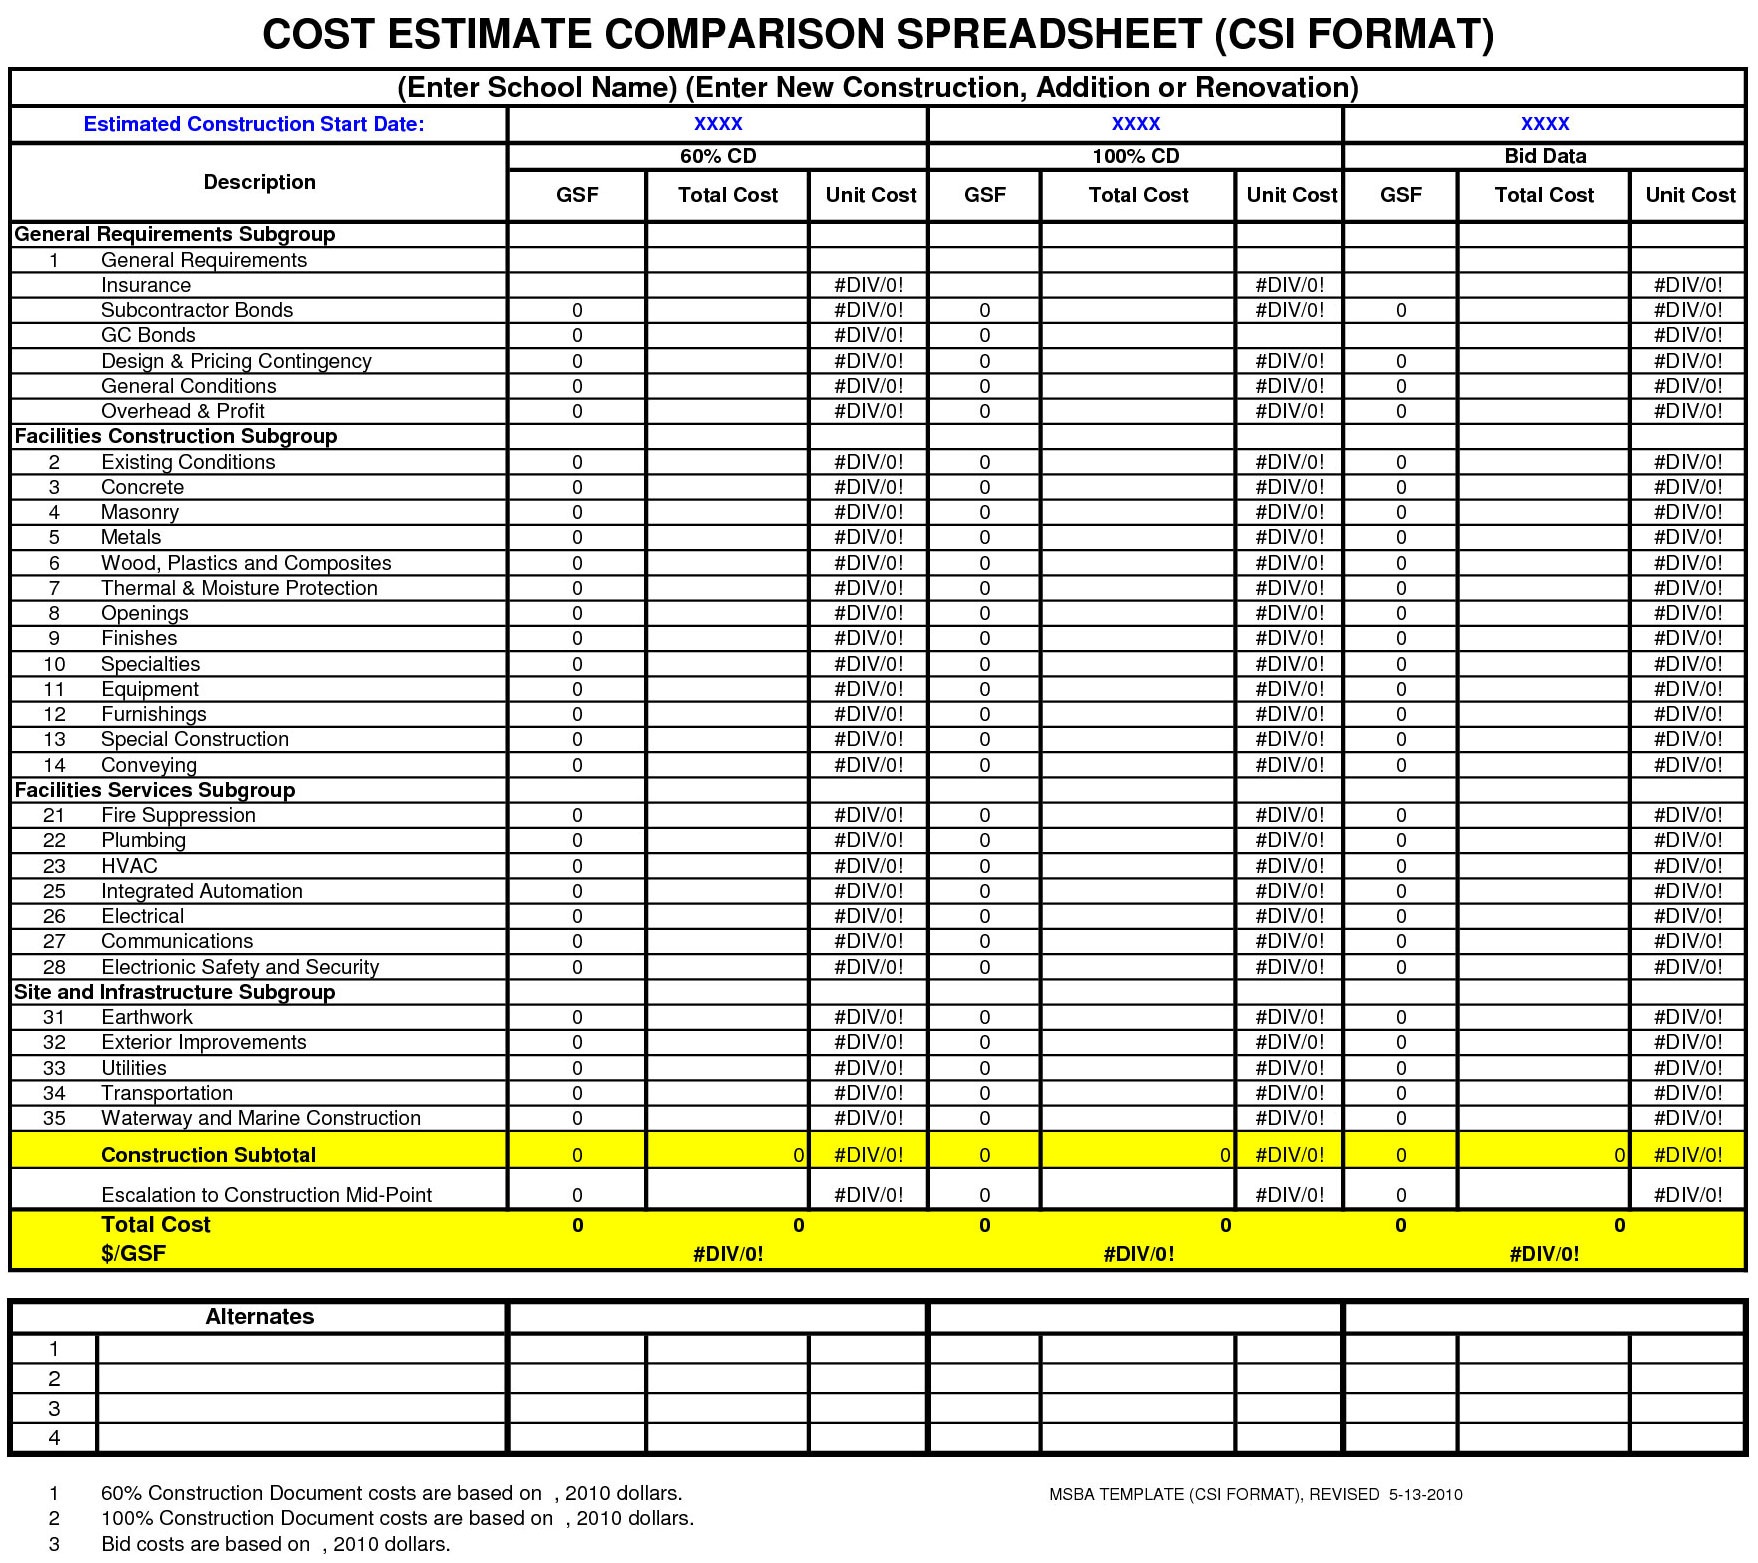 Bid Spreadsheet For Cost Estimate Comparison Spreadsheet  Free Download Cost Estimator